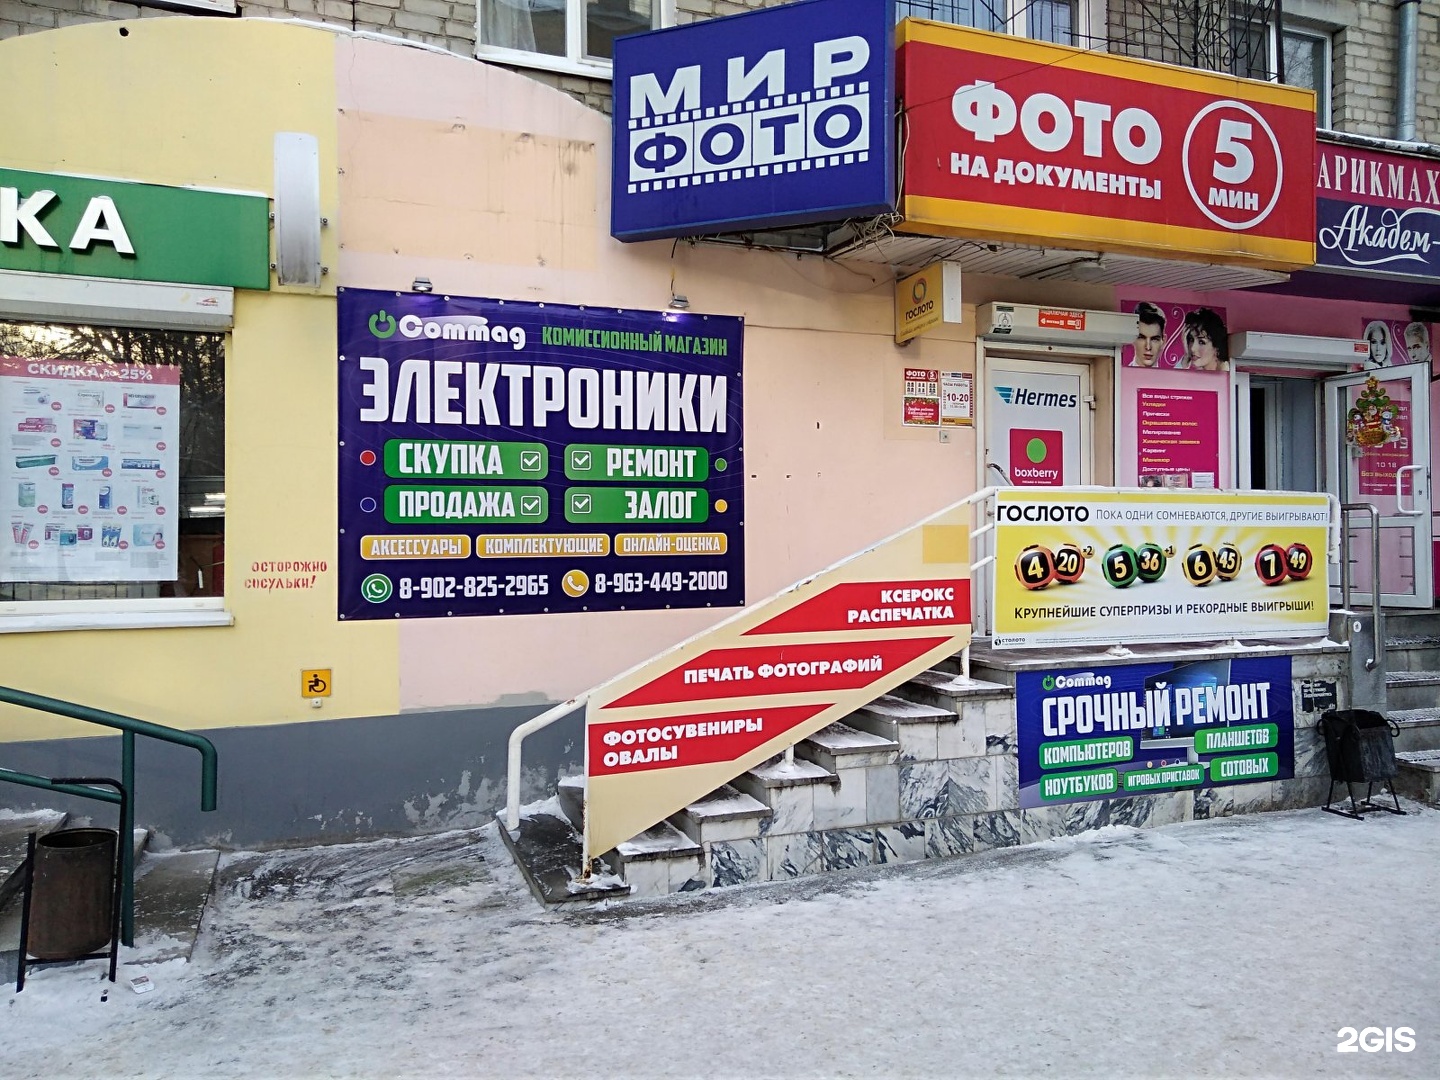 Комиссионный Магазин Екатеринбург